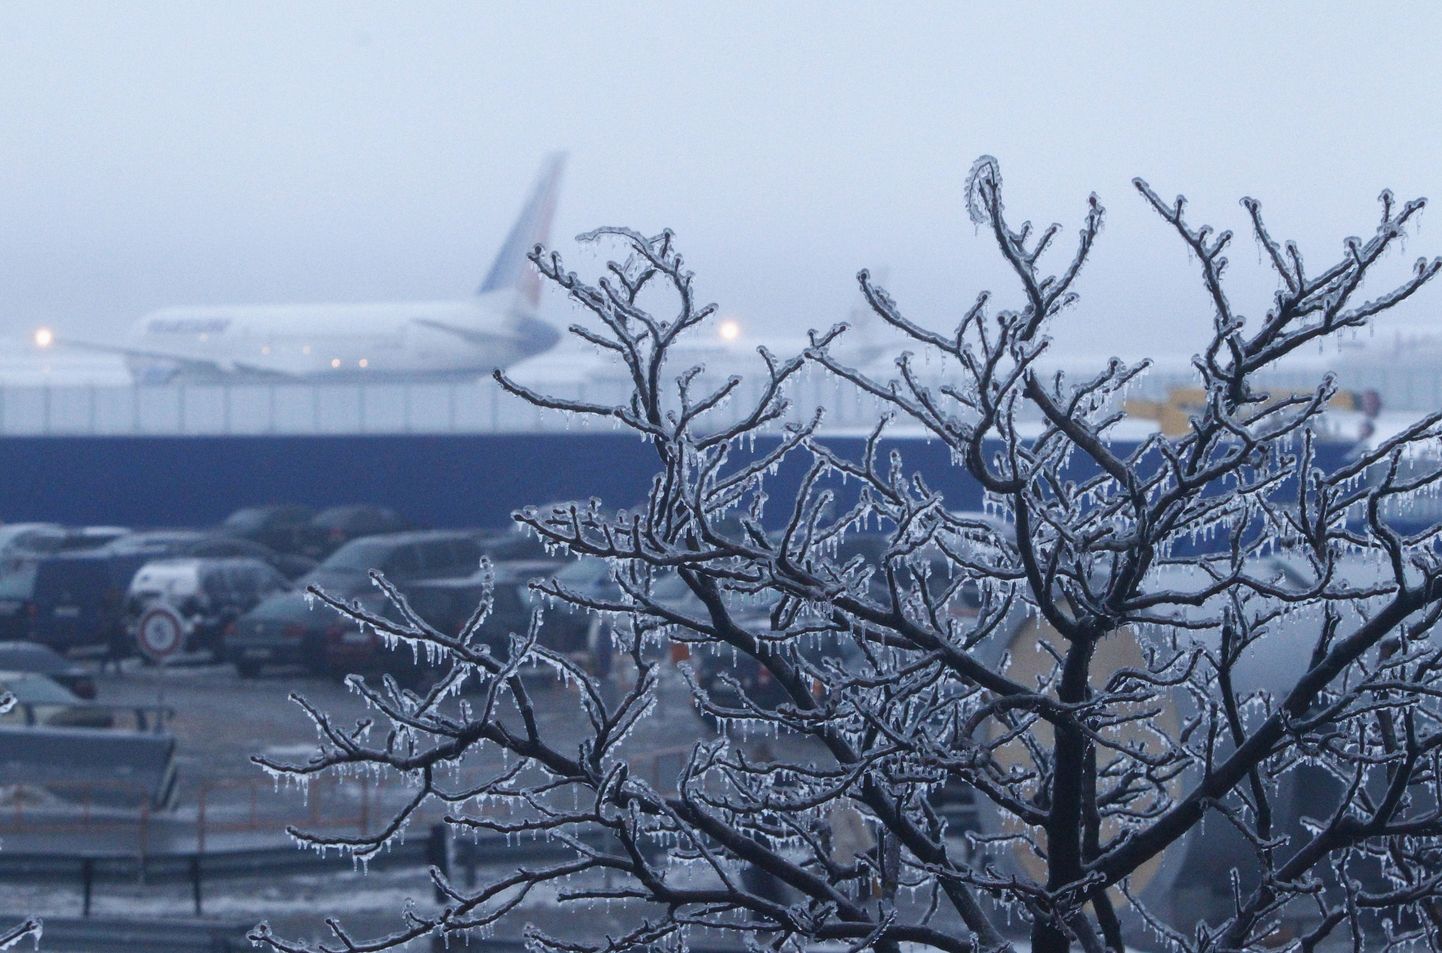 Jääga kaetud puuoks Moskvas. Taga paistab Domodedovo lennuväli.